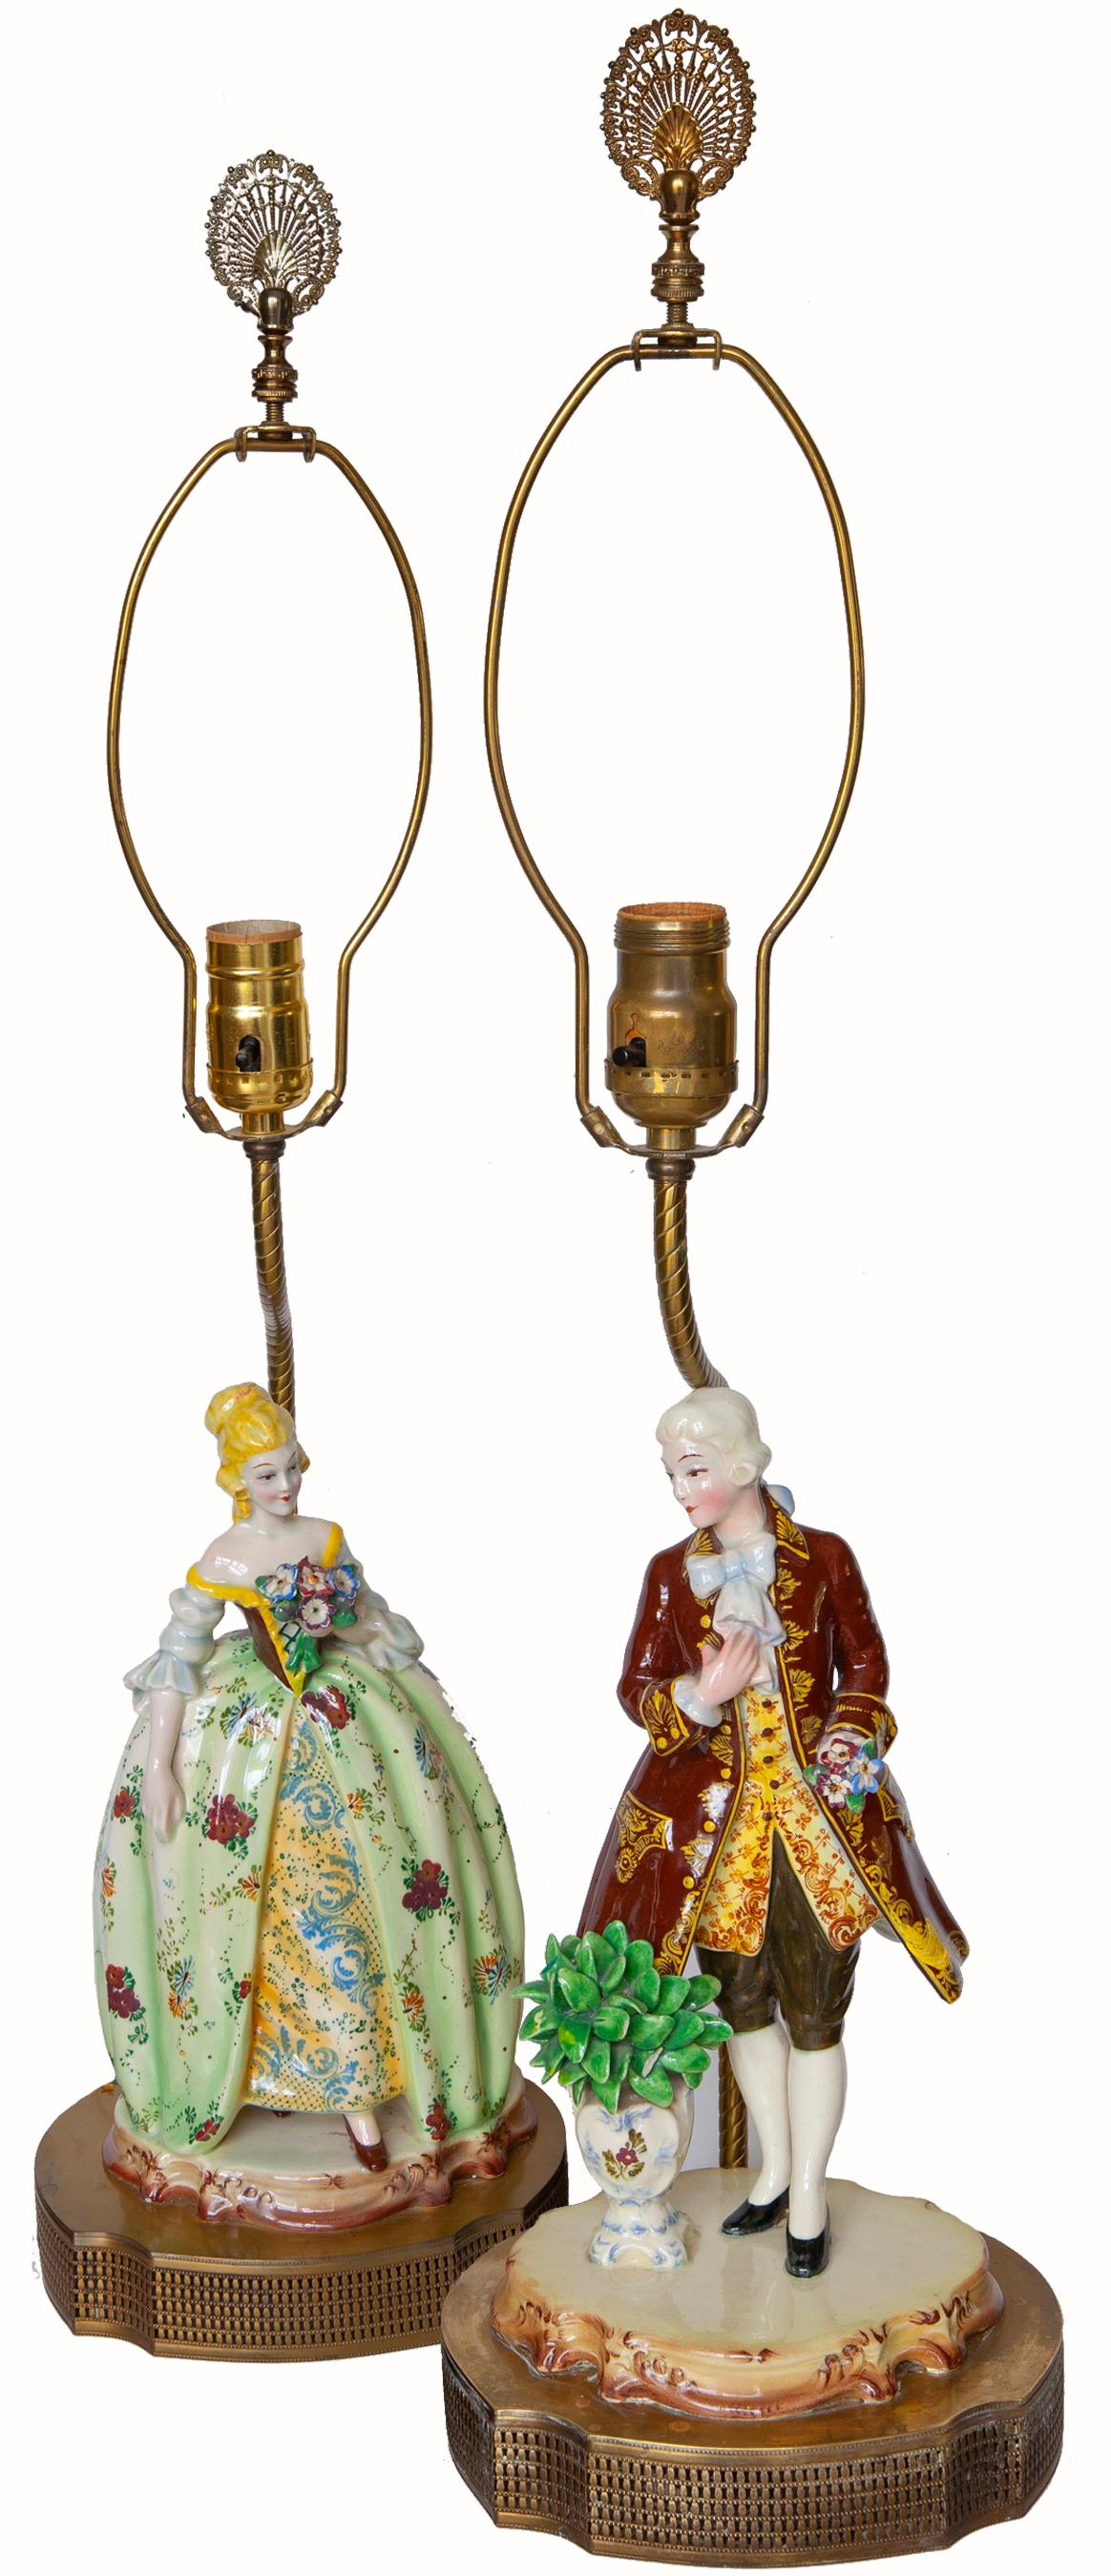 Les figurines en porcelaine de qualité du mouvement romantique présentent des vêtements allemands classiques de la fin de l'ère rococo. Ces figurines ont été montées sur des socles percés avec des douilles de lampe vers 1920-1930. Les épis de